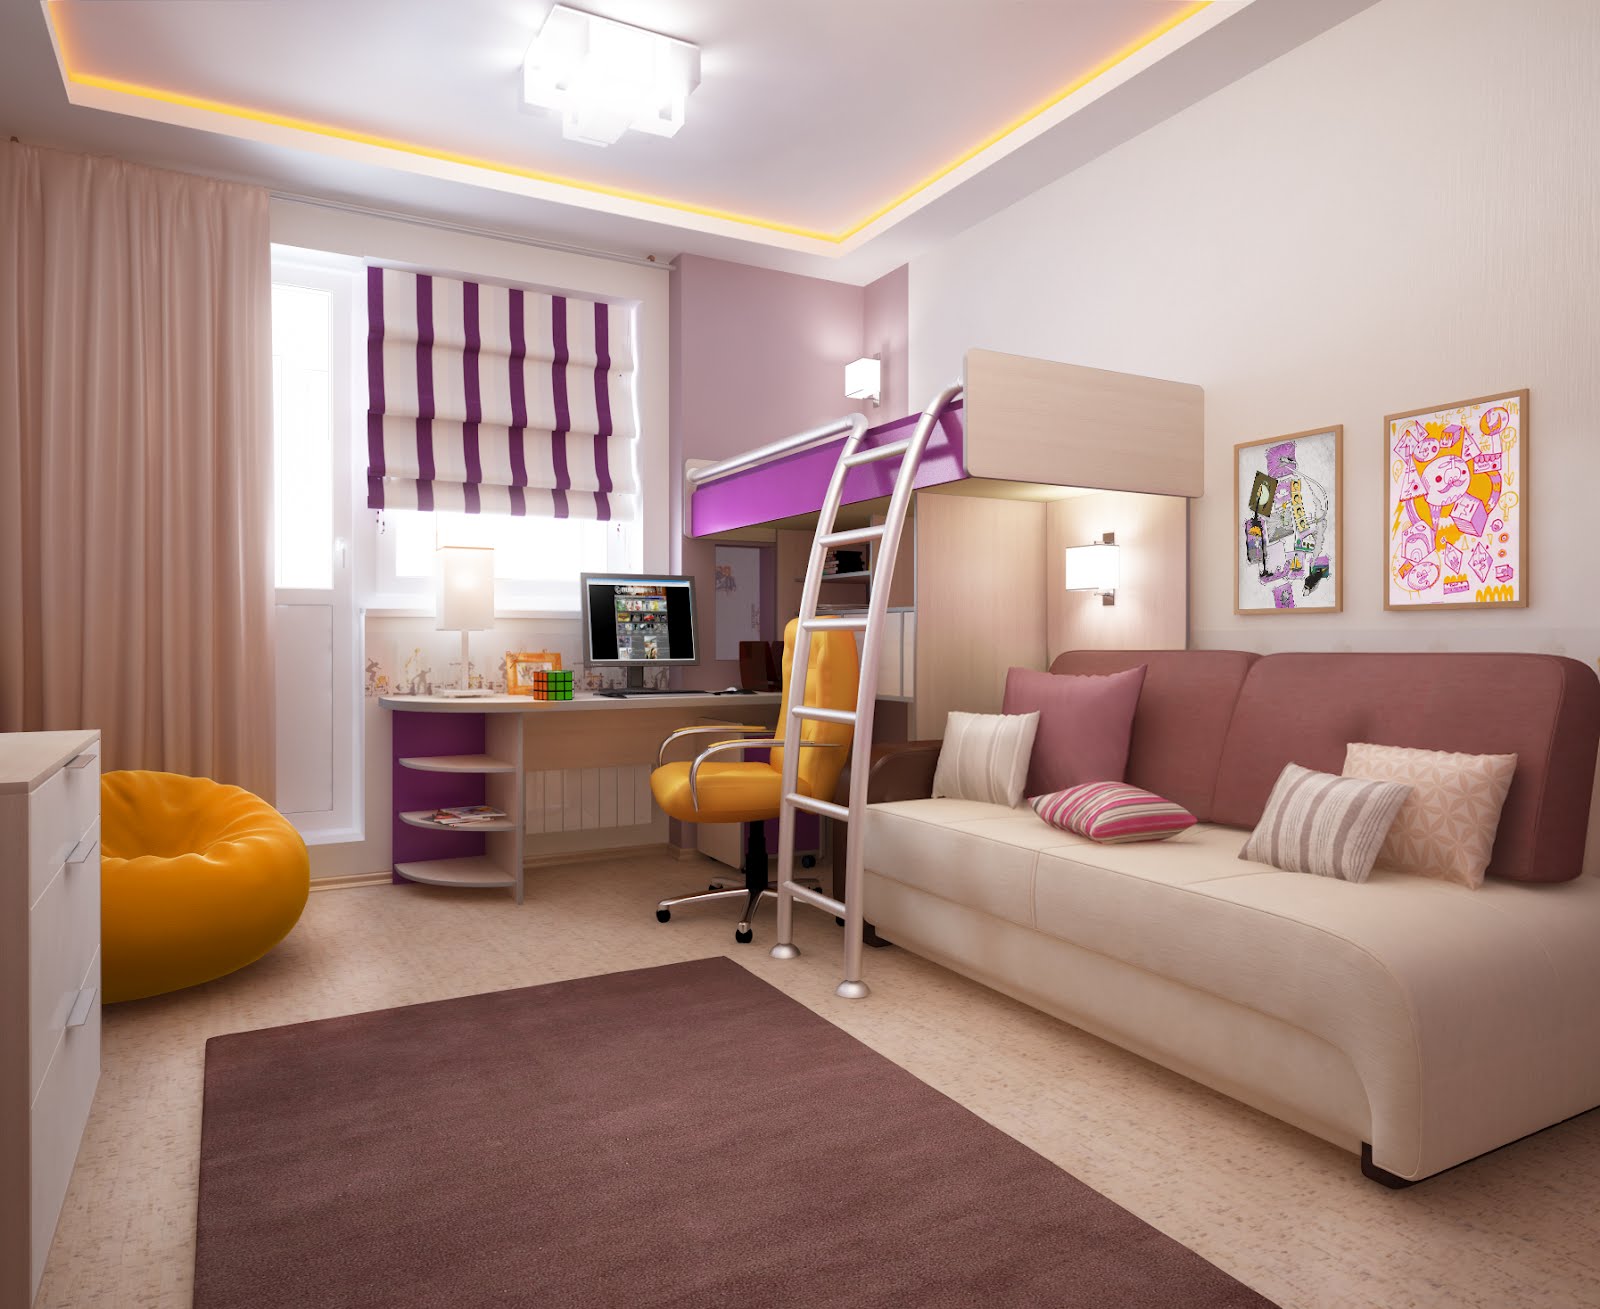 Комната для двух подростков, мальчиков или девочек: дизайн, зонирование, оформление